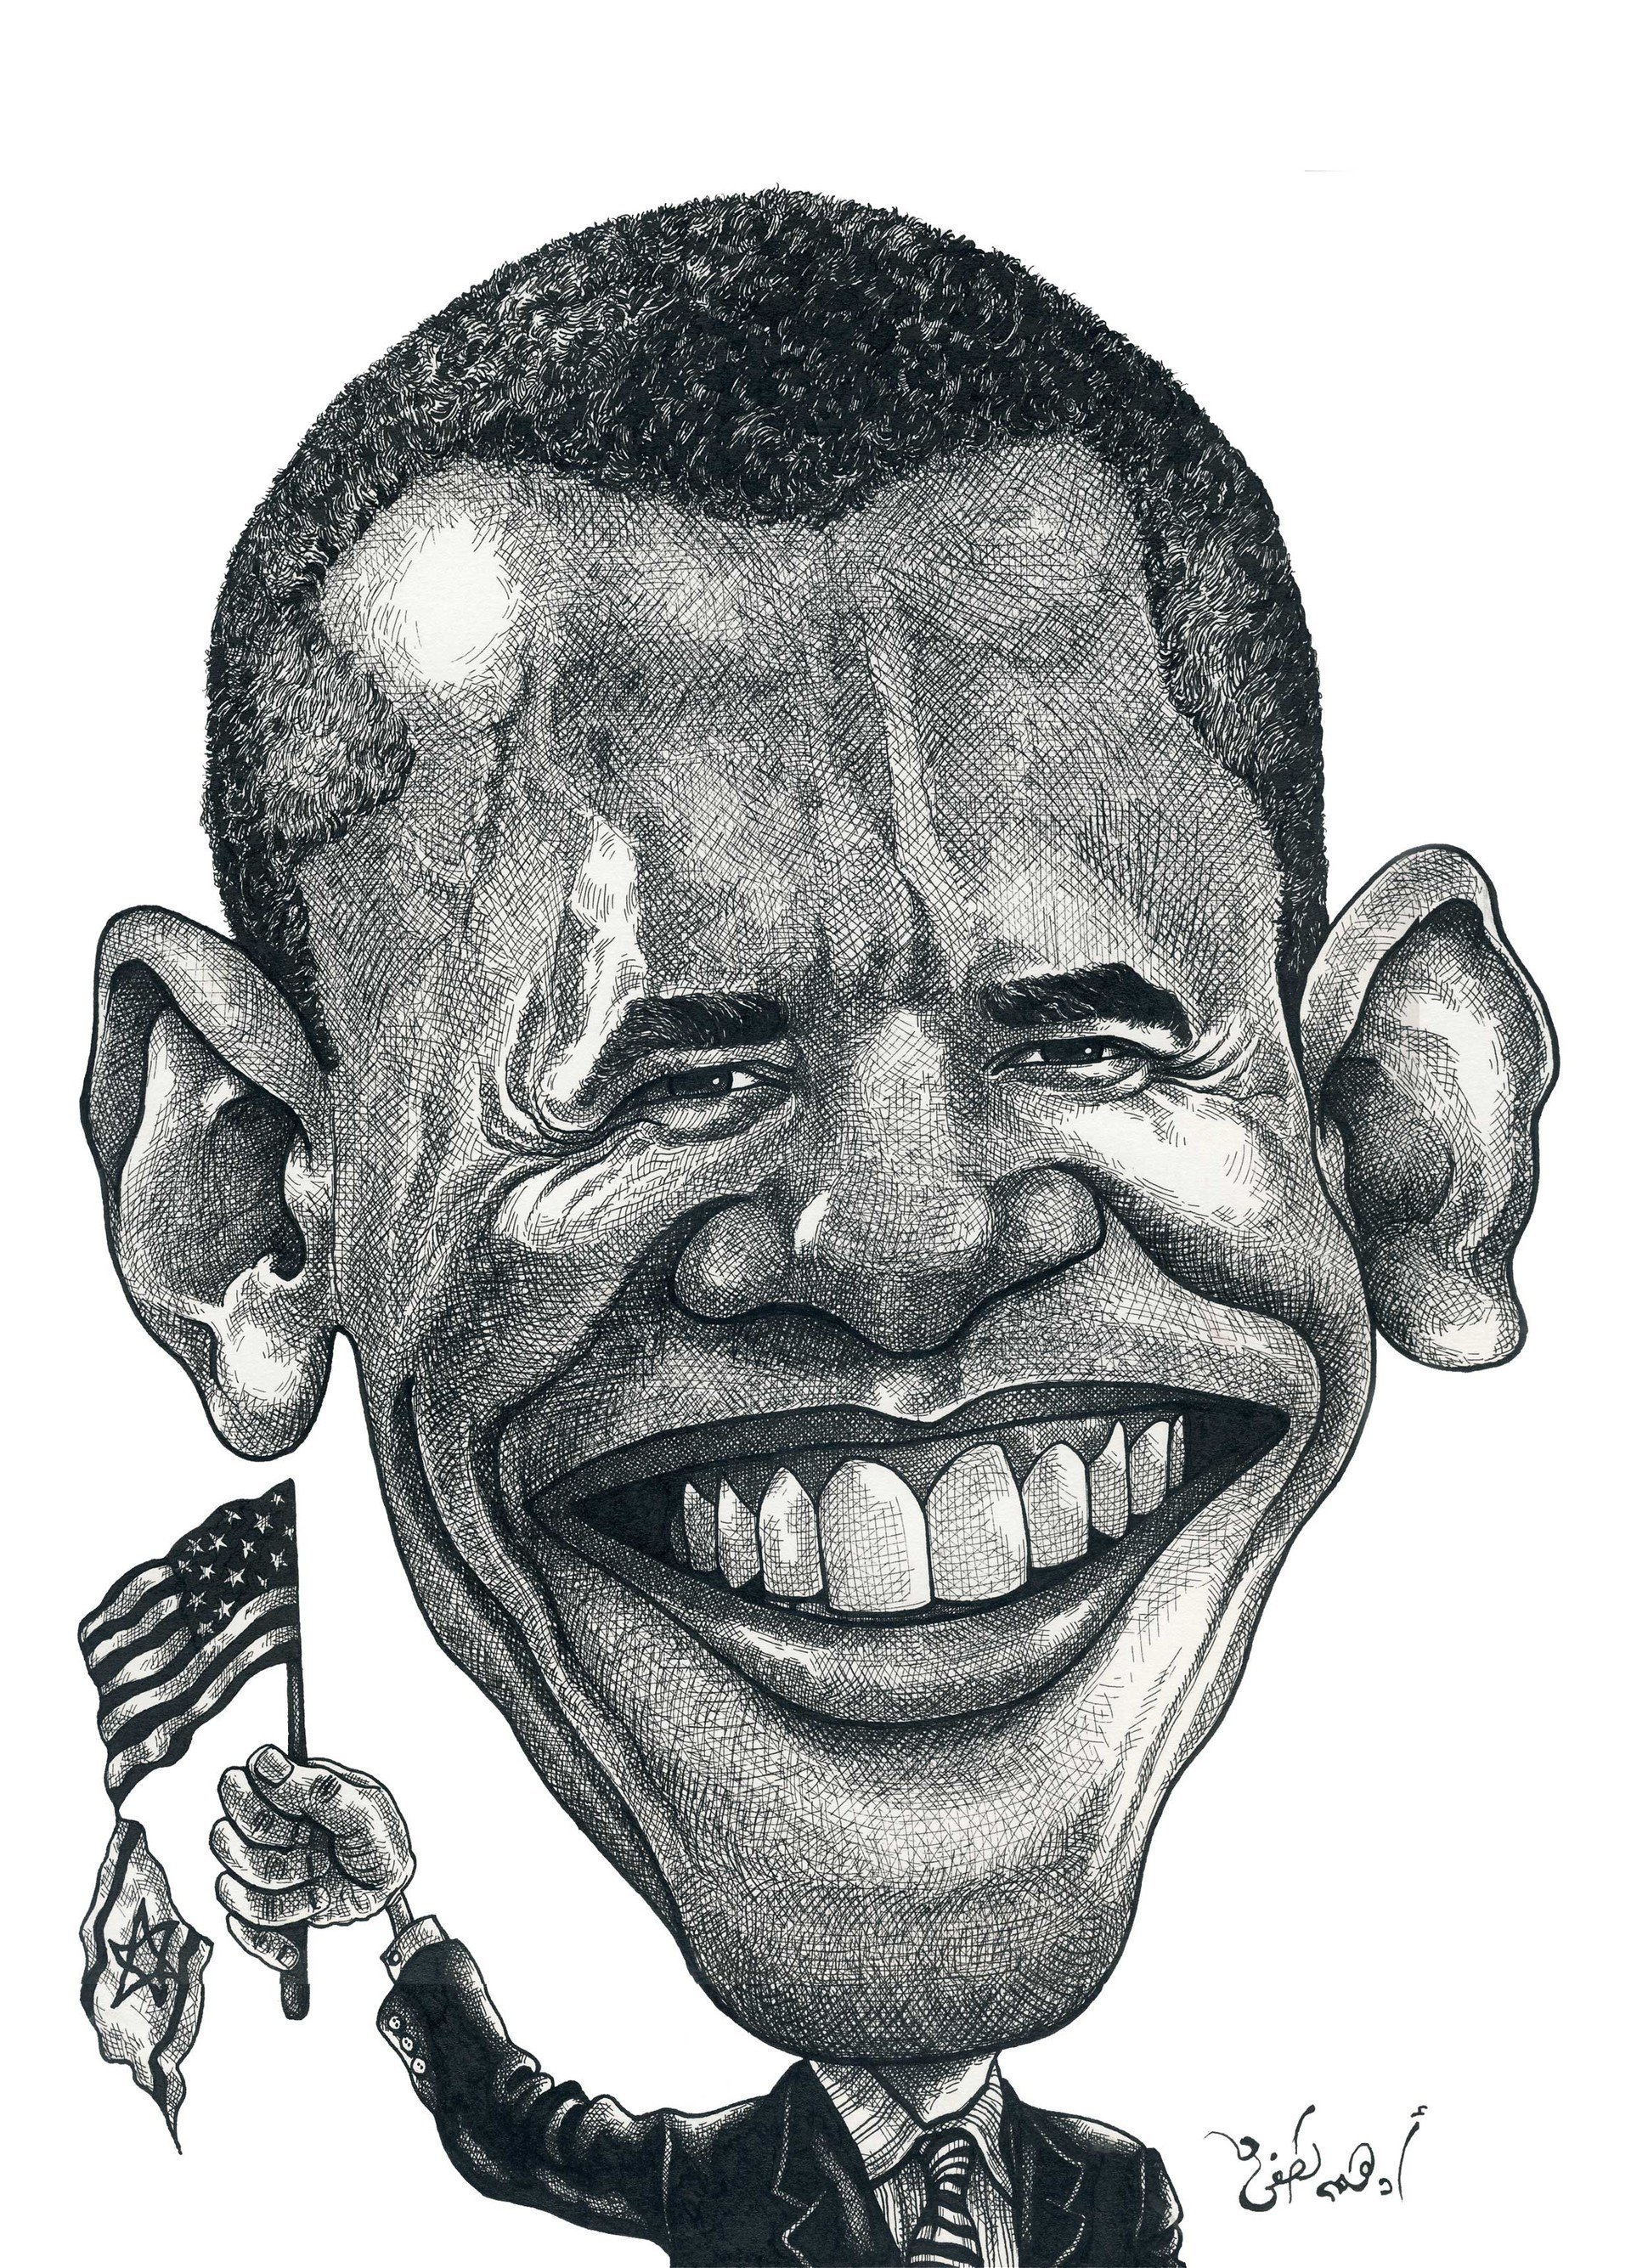 Сатирический образ шарж. Сатирический образ человека Обама. Сатирический образ Барак Обама. Барак Обама сатирический портрет. Карикатурные портреты Обамы.